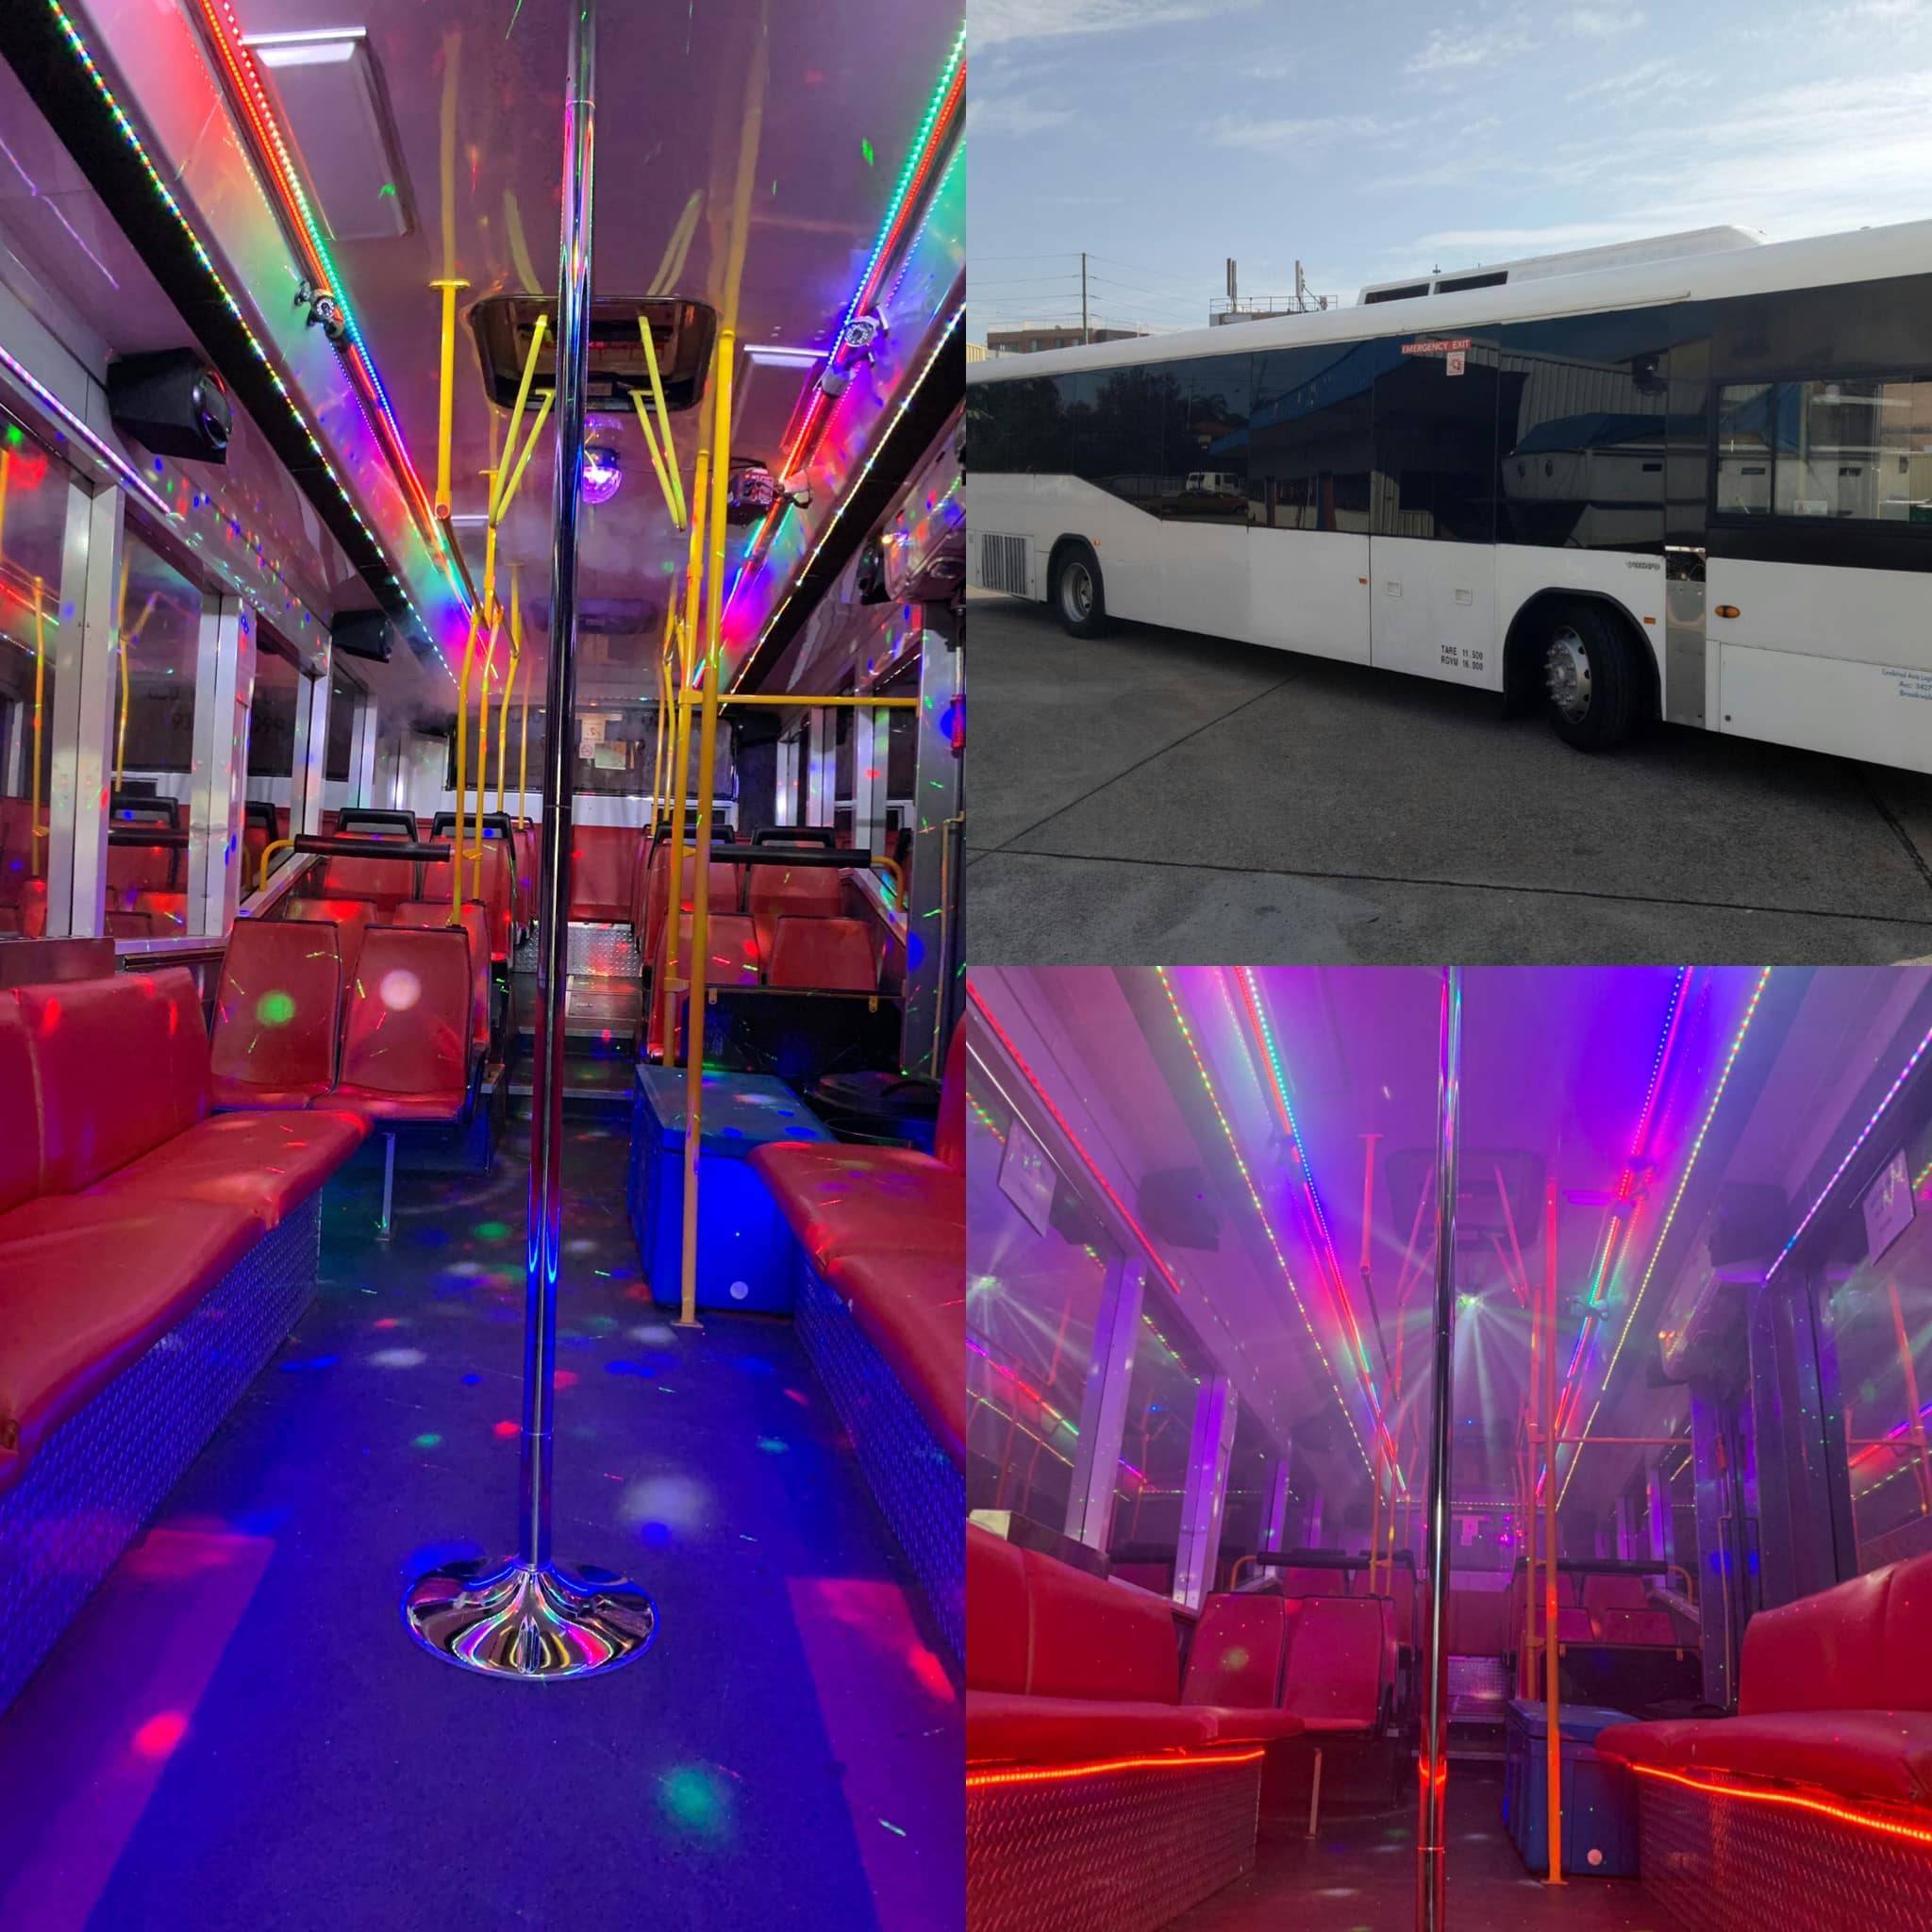 Бизнес-идея №1267. автобусы для вечеринок и праздничных мероприятий | бизнес в блоге